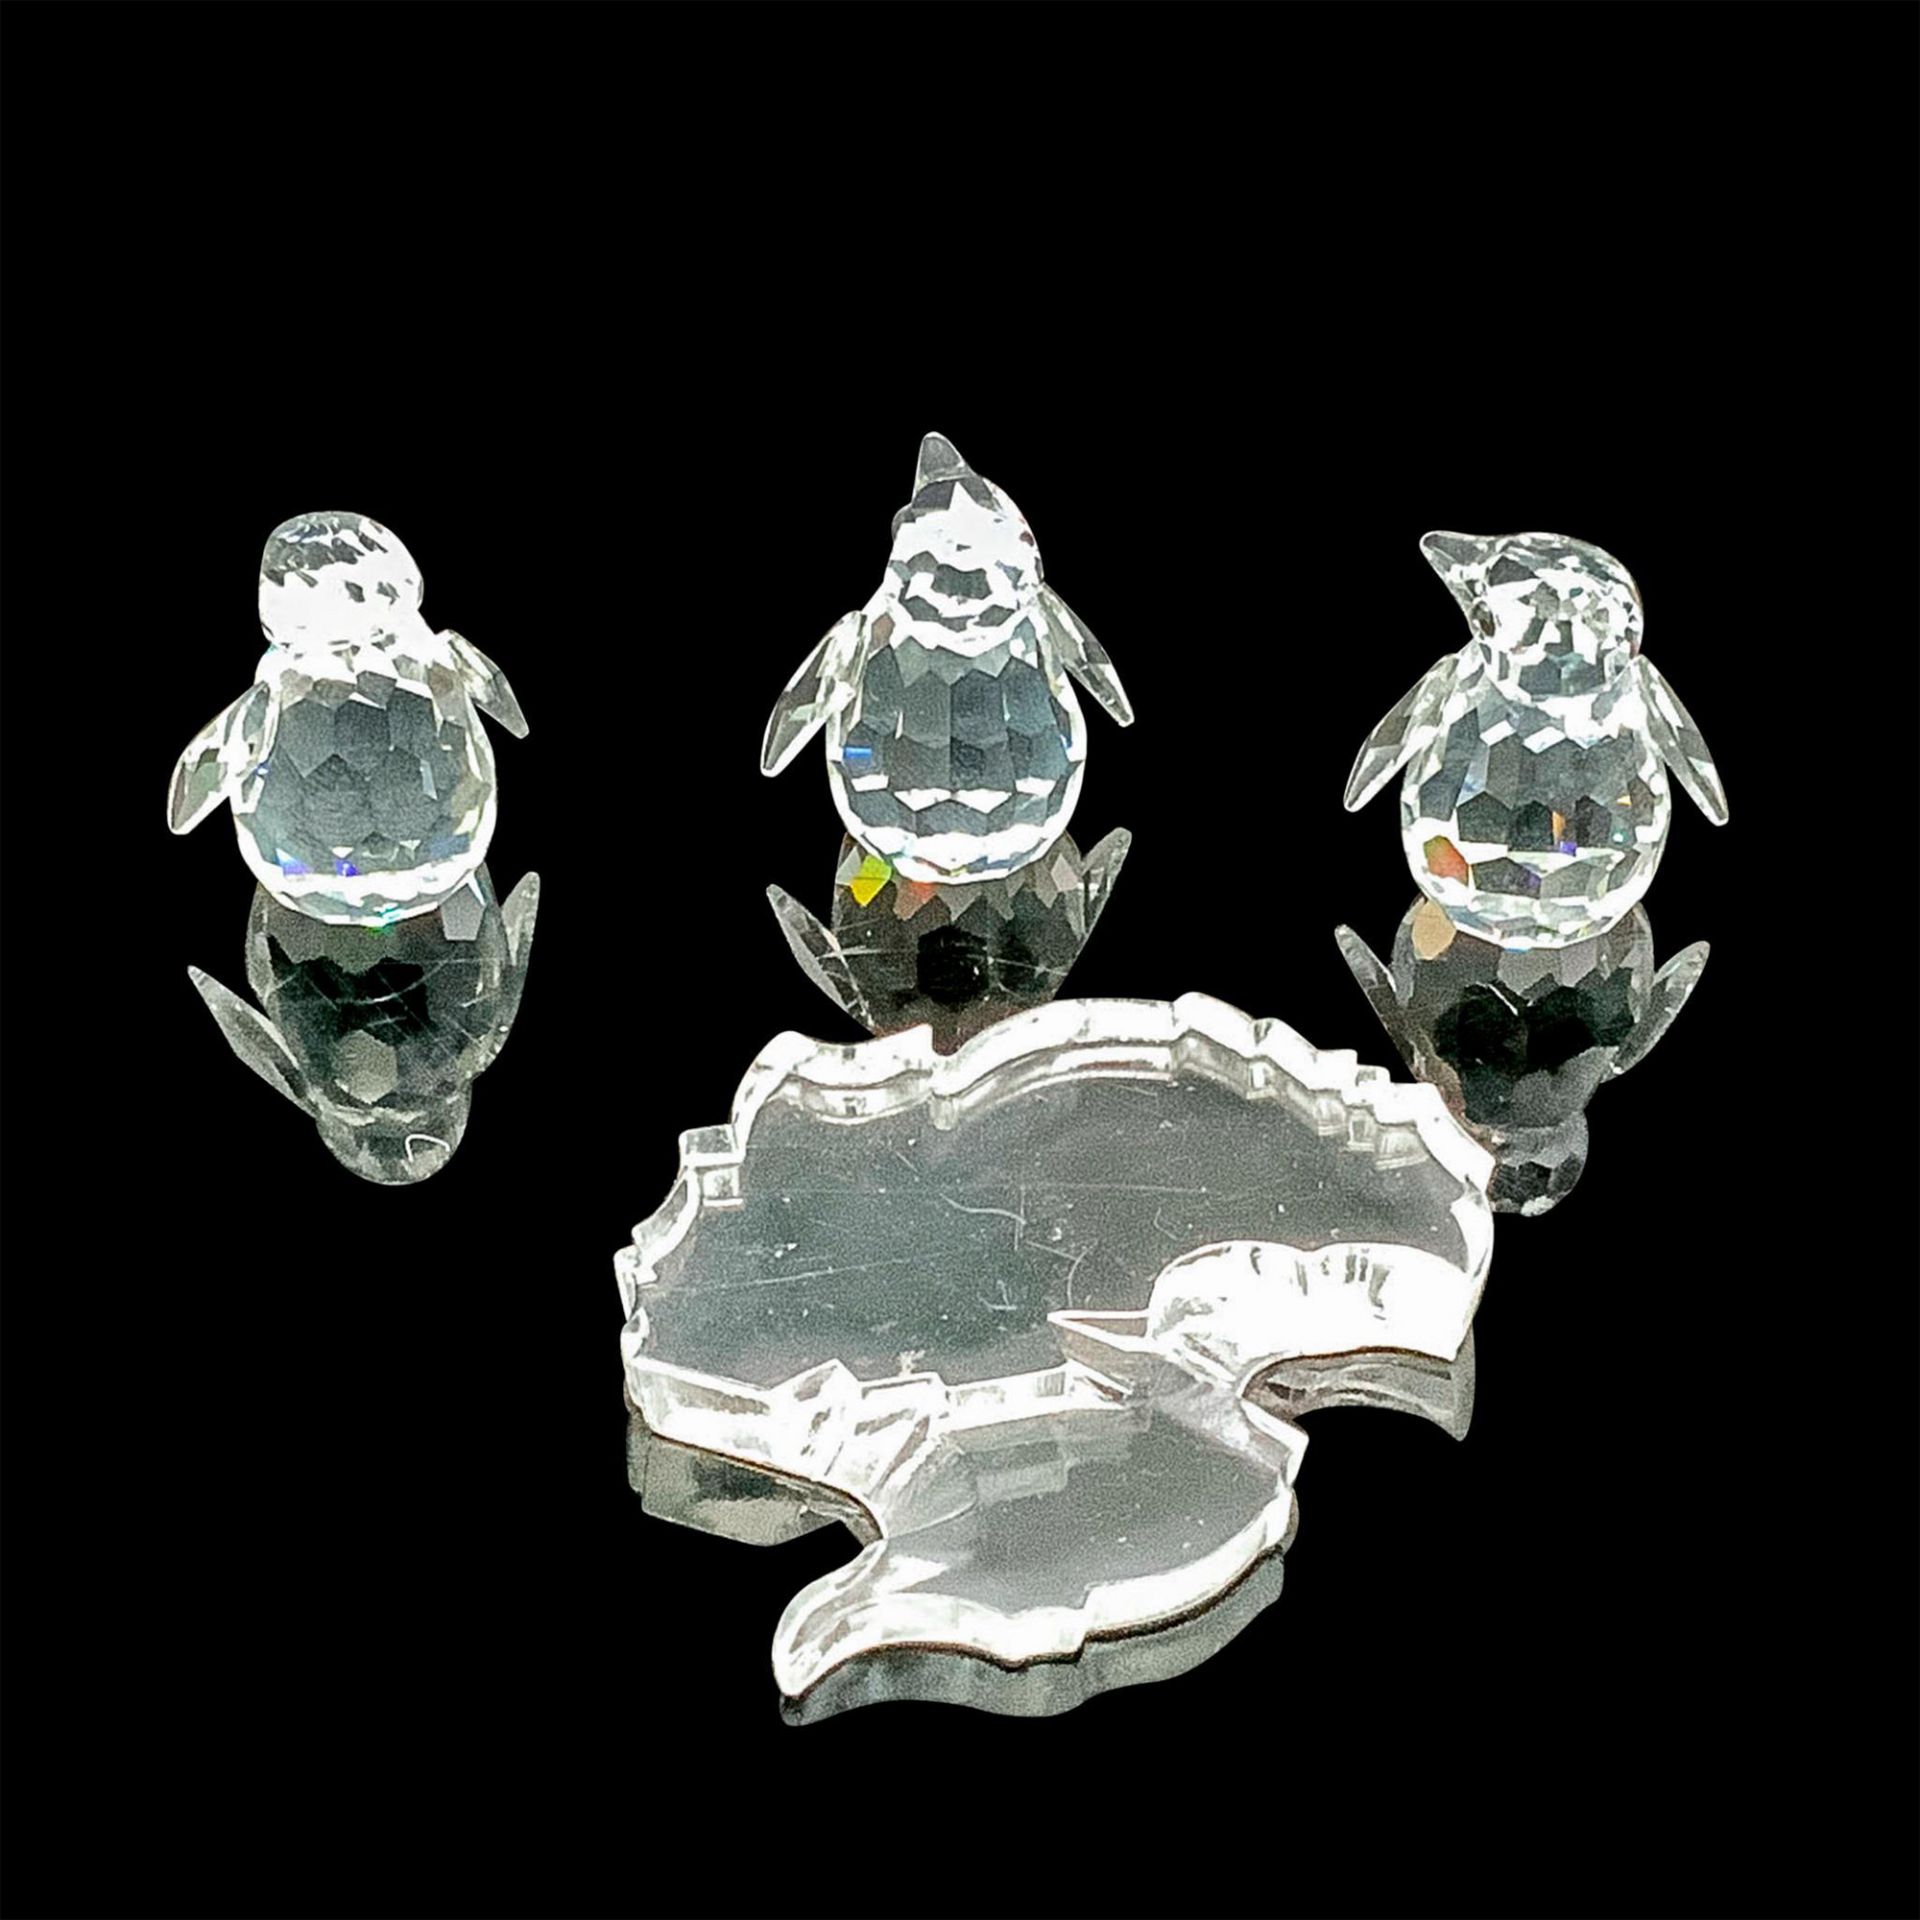 Swarovski Crystal Figurine, Three Penguins On Ice Flow - Image 2 of 4